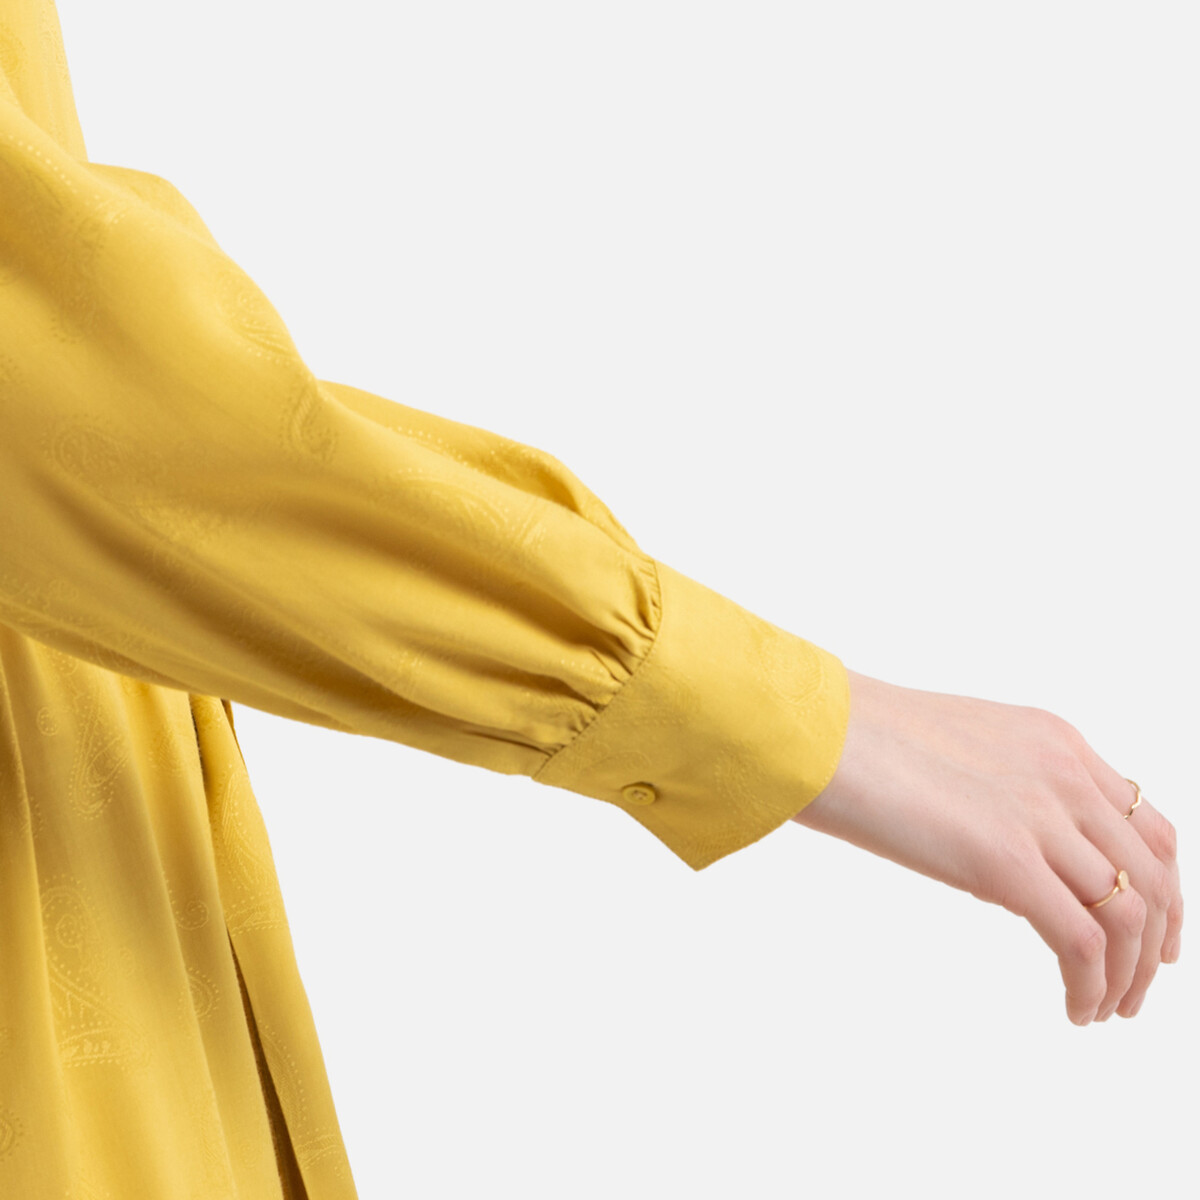 Платье-рубашка La Redoute Длинное с длинными рукавами 42 (FR) - 48 (RUS) желтый, размер 42 (FR) - 48 (RUS) Длинное с длинными рукавами 42 (FR) - 48 (RUS) желтый - фото 3